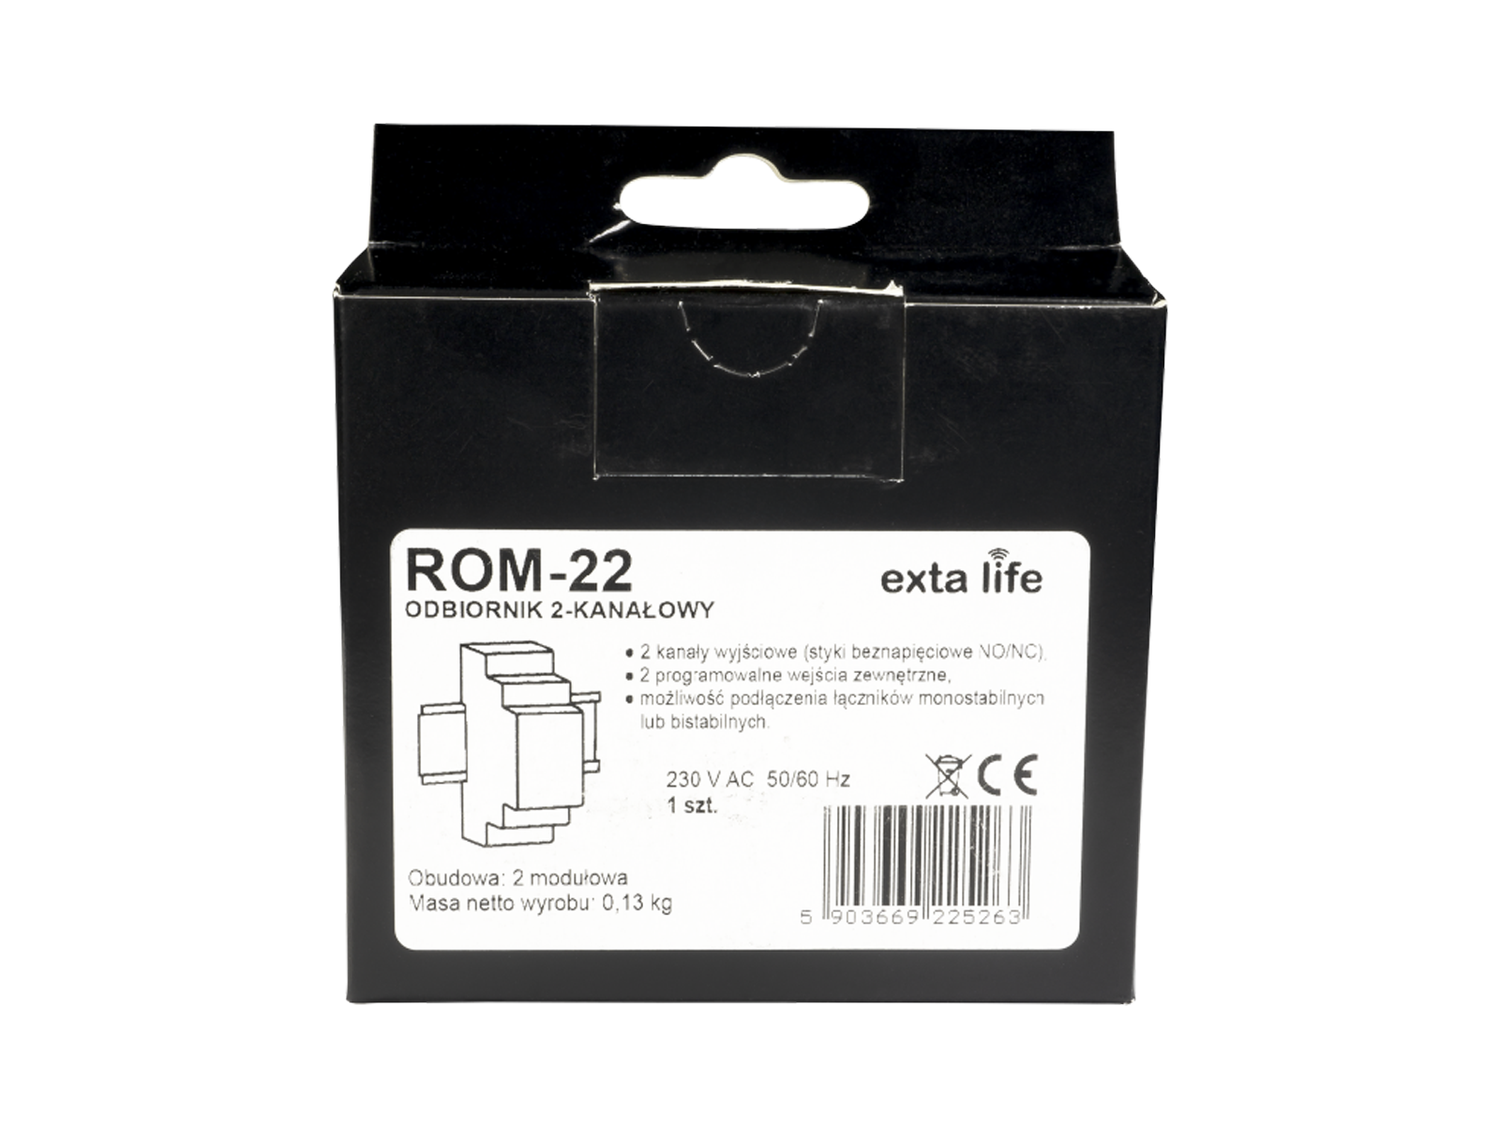 Rádiový přijímač ROM-22, 2-kanálový modulový